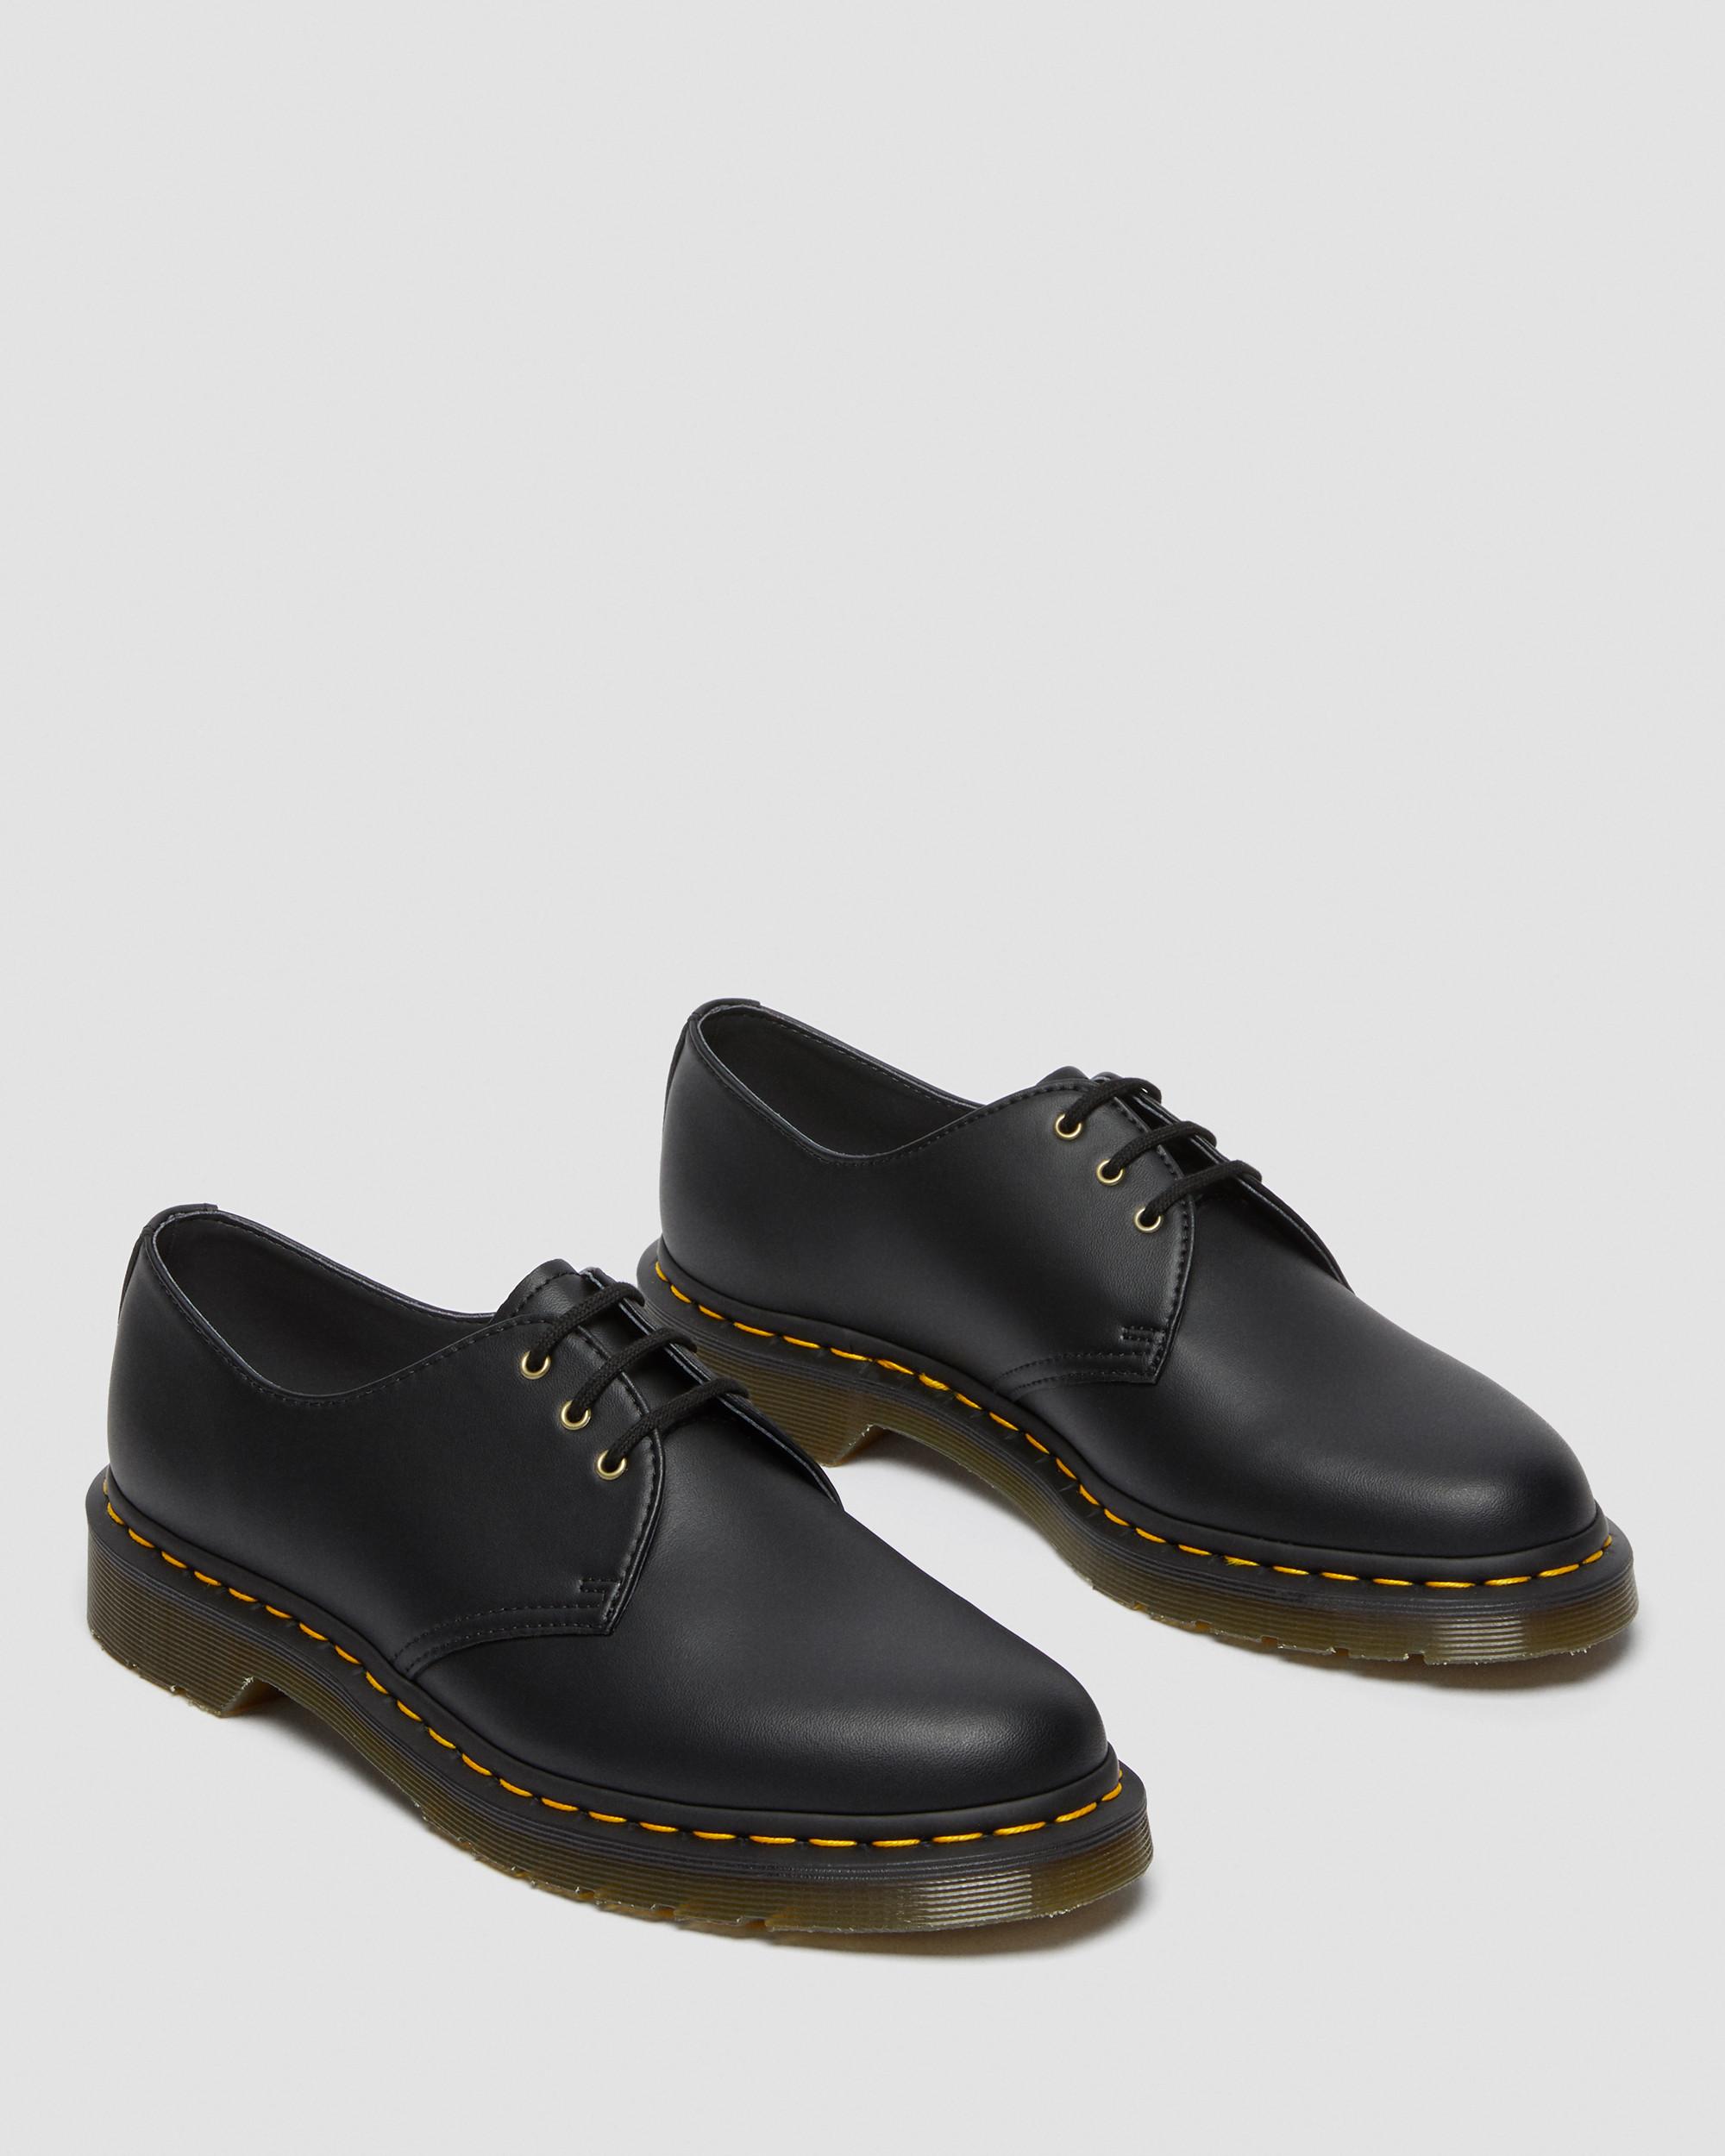 Vegan 1461 Felix Oxford Shoes in Black | Dr. Martens